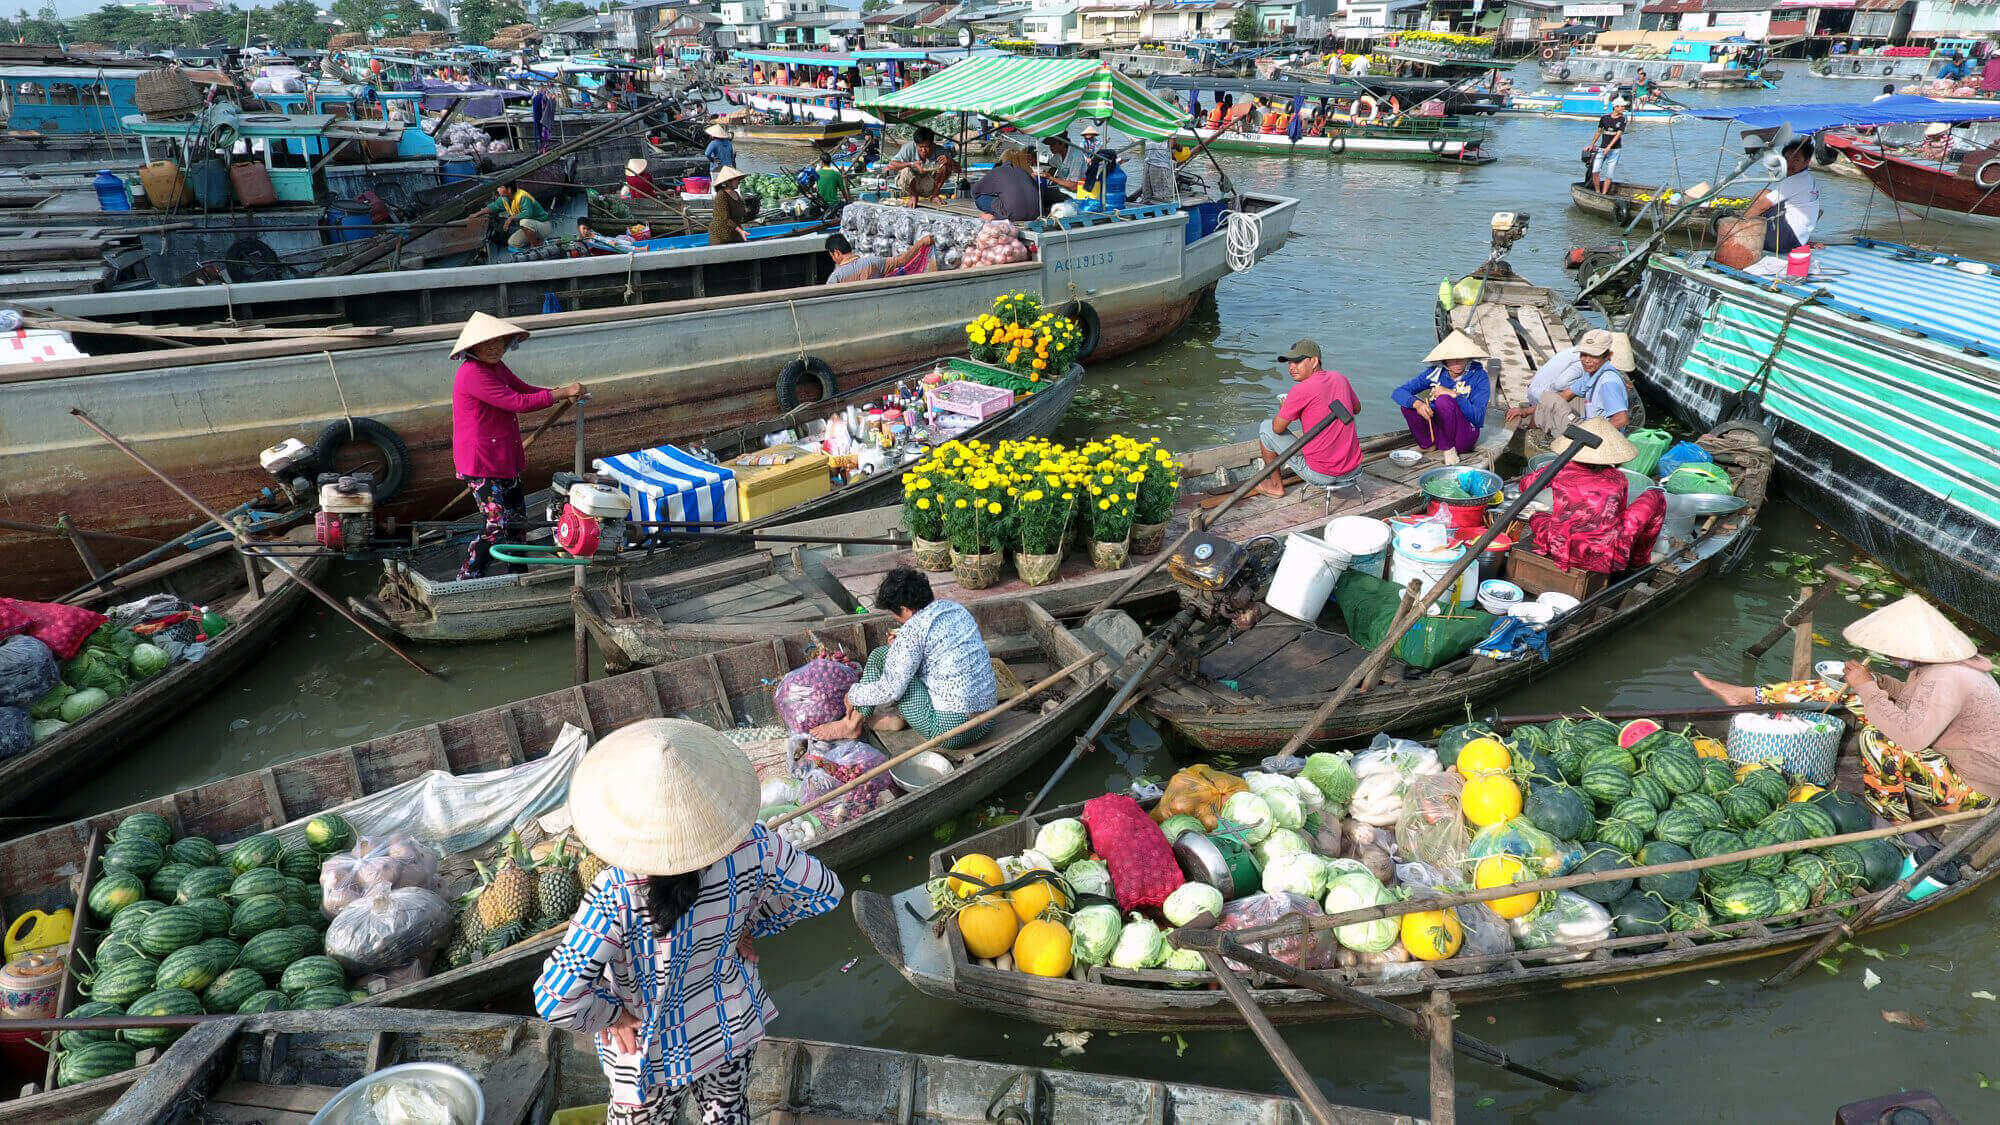 Thuyết minh về chợ nổi Cái Răng  Ngôi chợ độc đáo ở Cần Thơ  Viet Fun  Travel